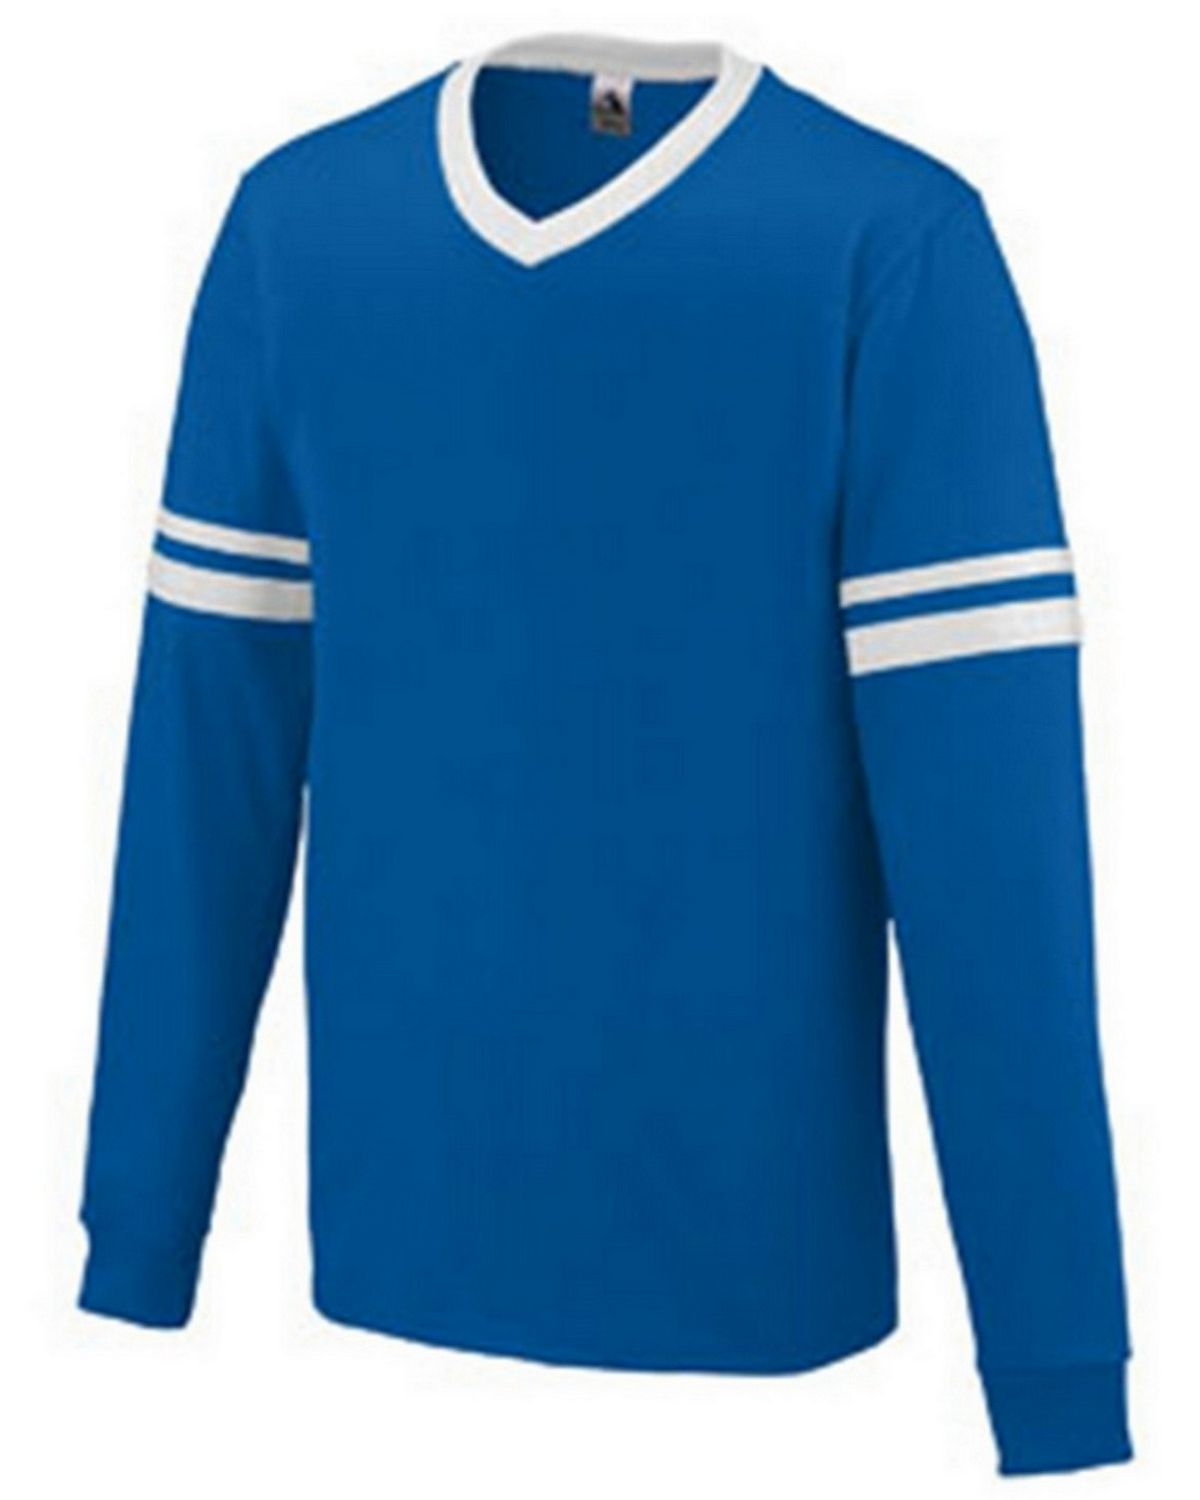 Augusta Sportswear 373 Youth Long-Sleeve Stripe Jersey